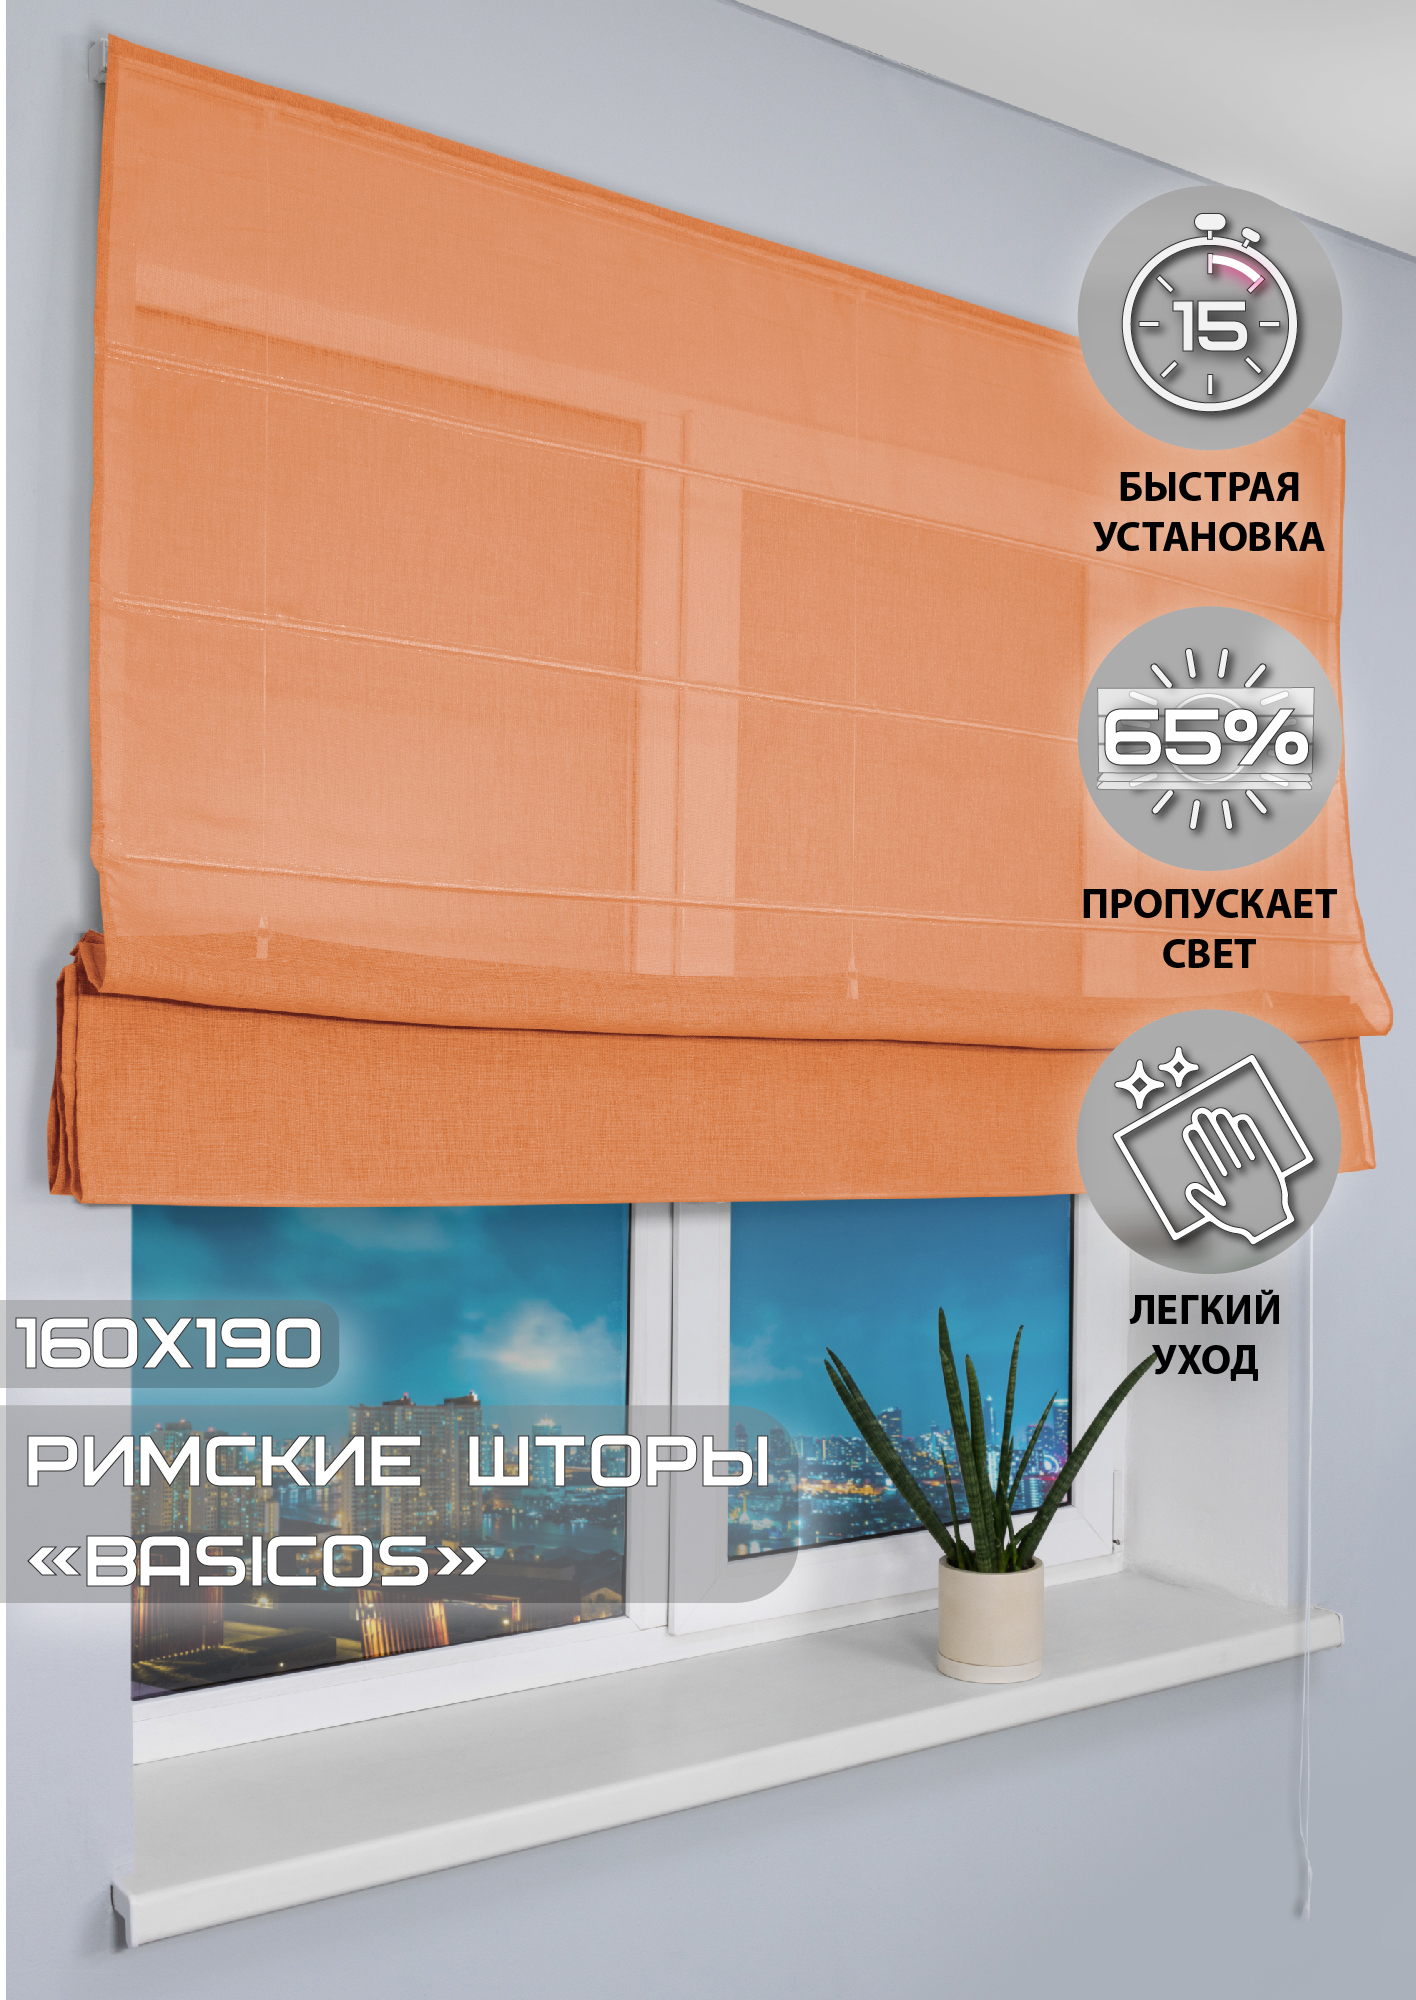 91002973 Римская штора "Basicos" 190x160 см цвет оранжевый STLM-0434242 ЭСКАР